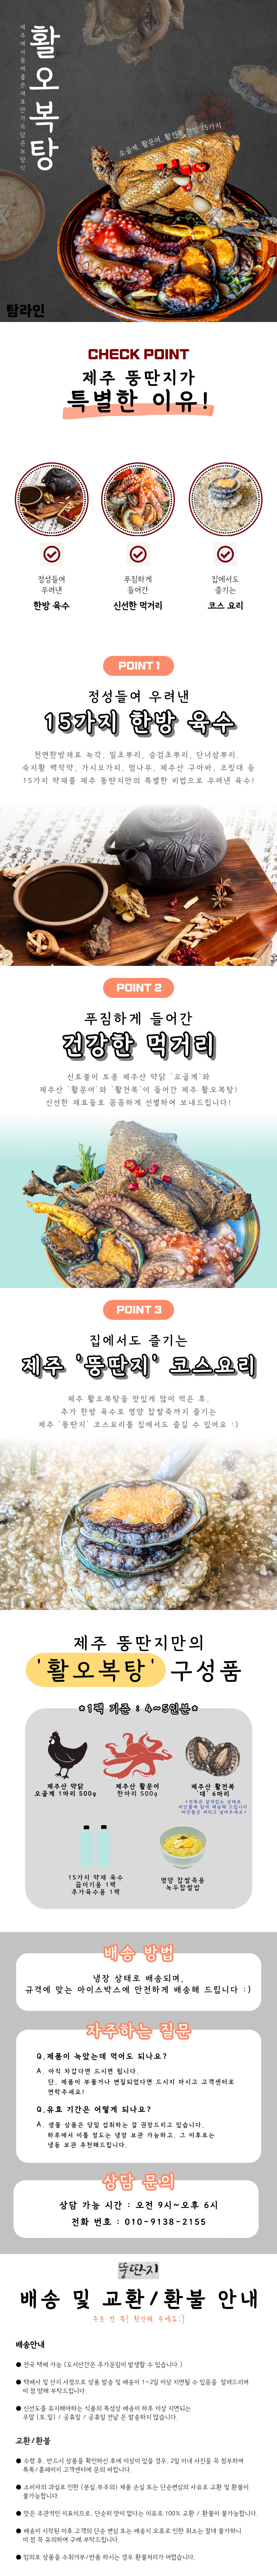 [탐라인]로컬푸드 제주 뚱딴지식당 특허받은 오복탕 중 상세